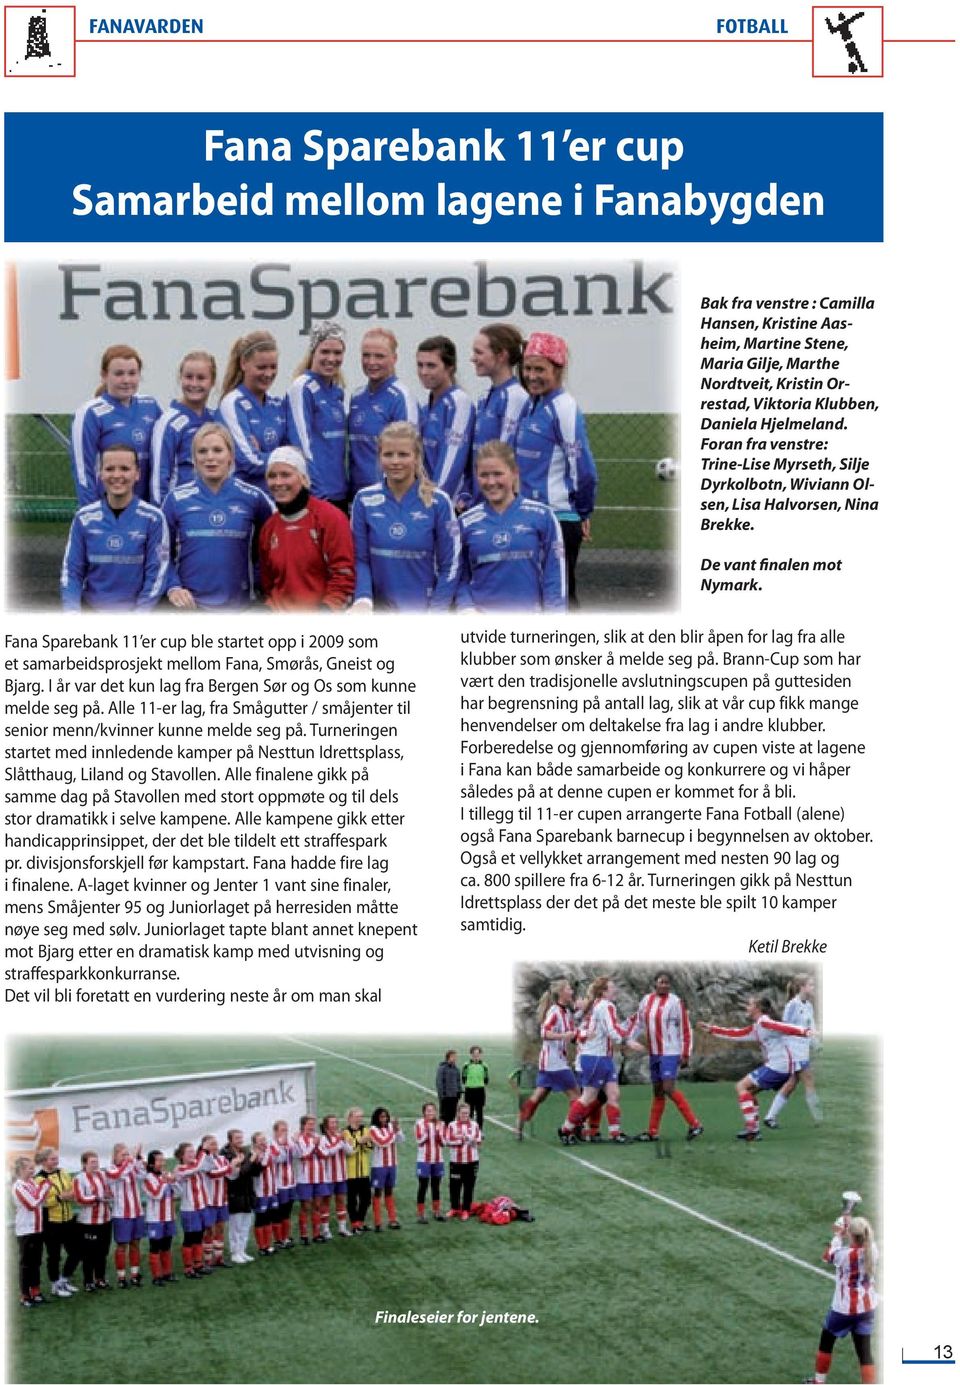 Fana Sparebank 11 er cup ble startet opp i 2009 som et samarbeidsprosjekt mellom Fana, Smørås, Gneist og Bjarg. I år var det kun lag fra Bergen Sør og Os som kunne melde seg på.